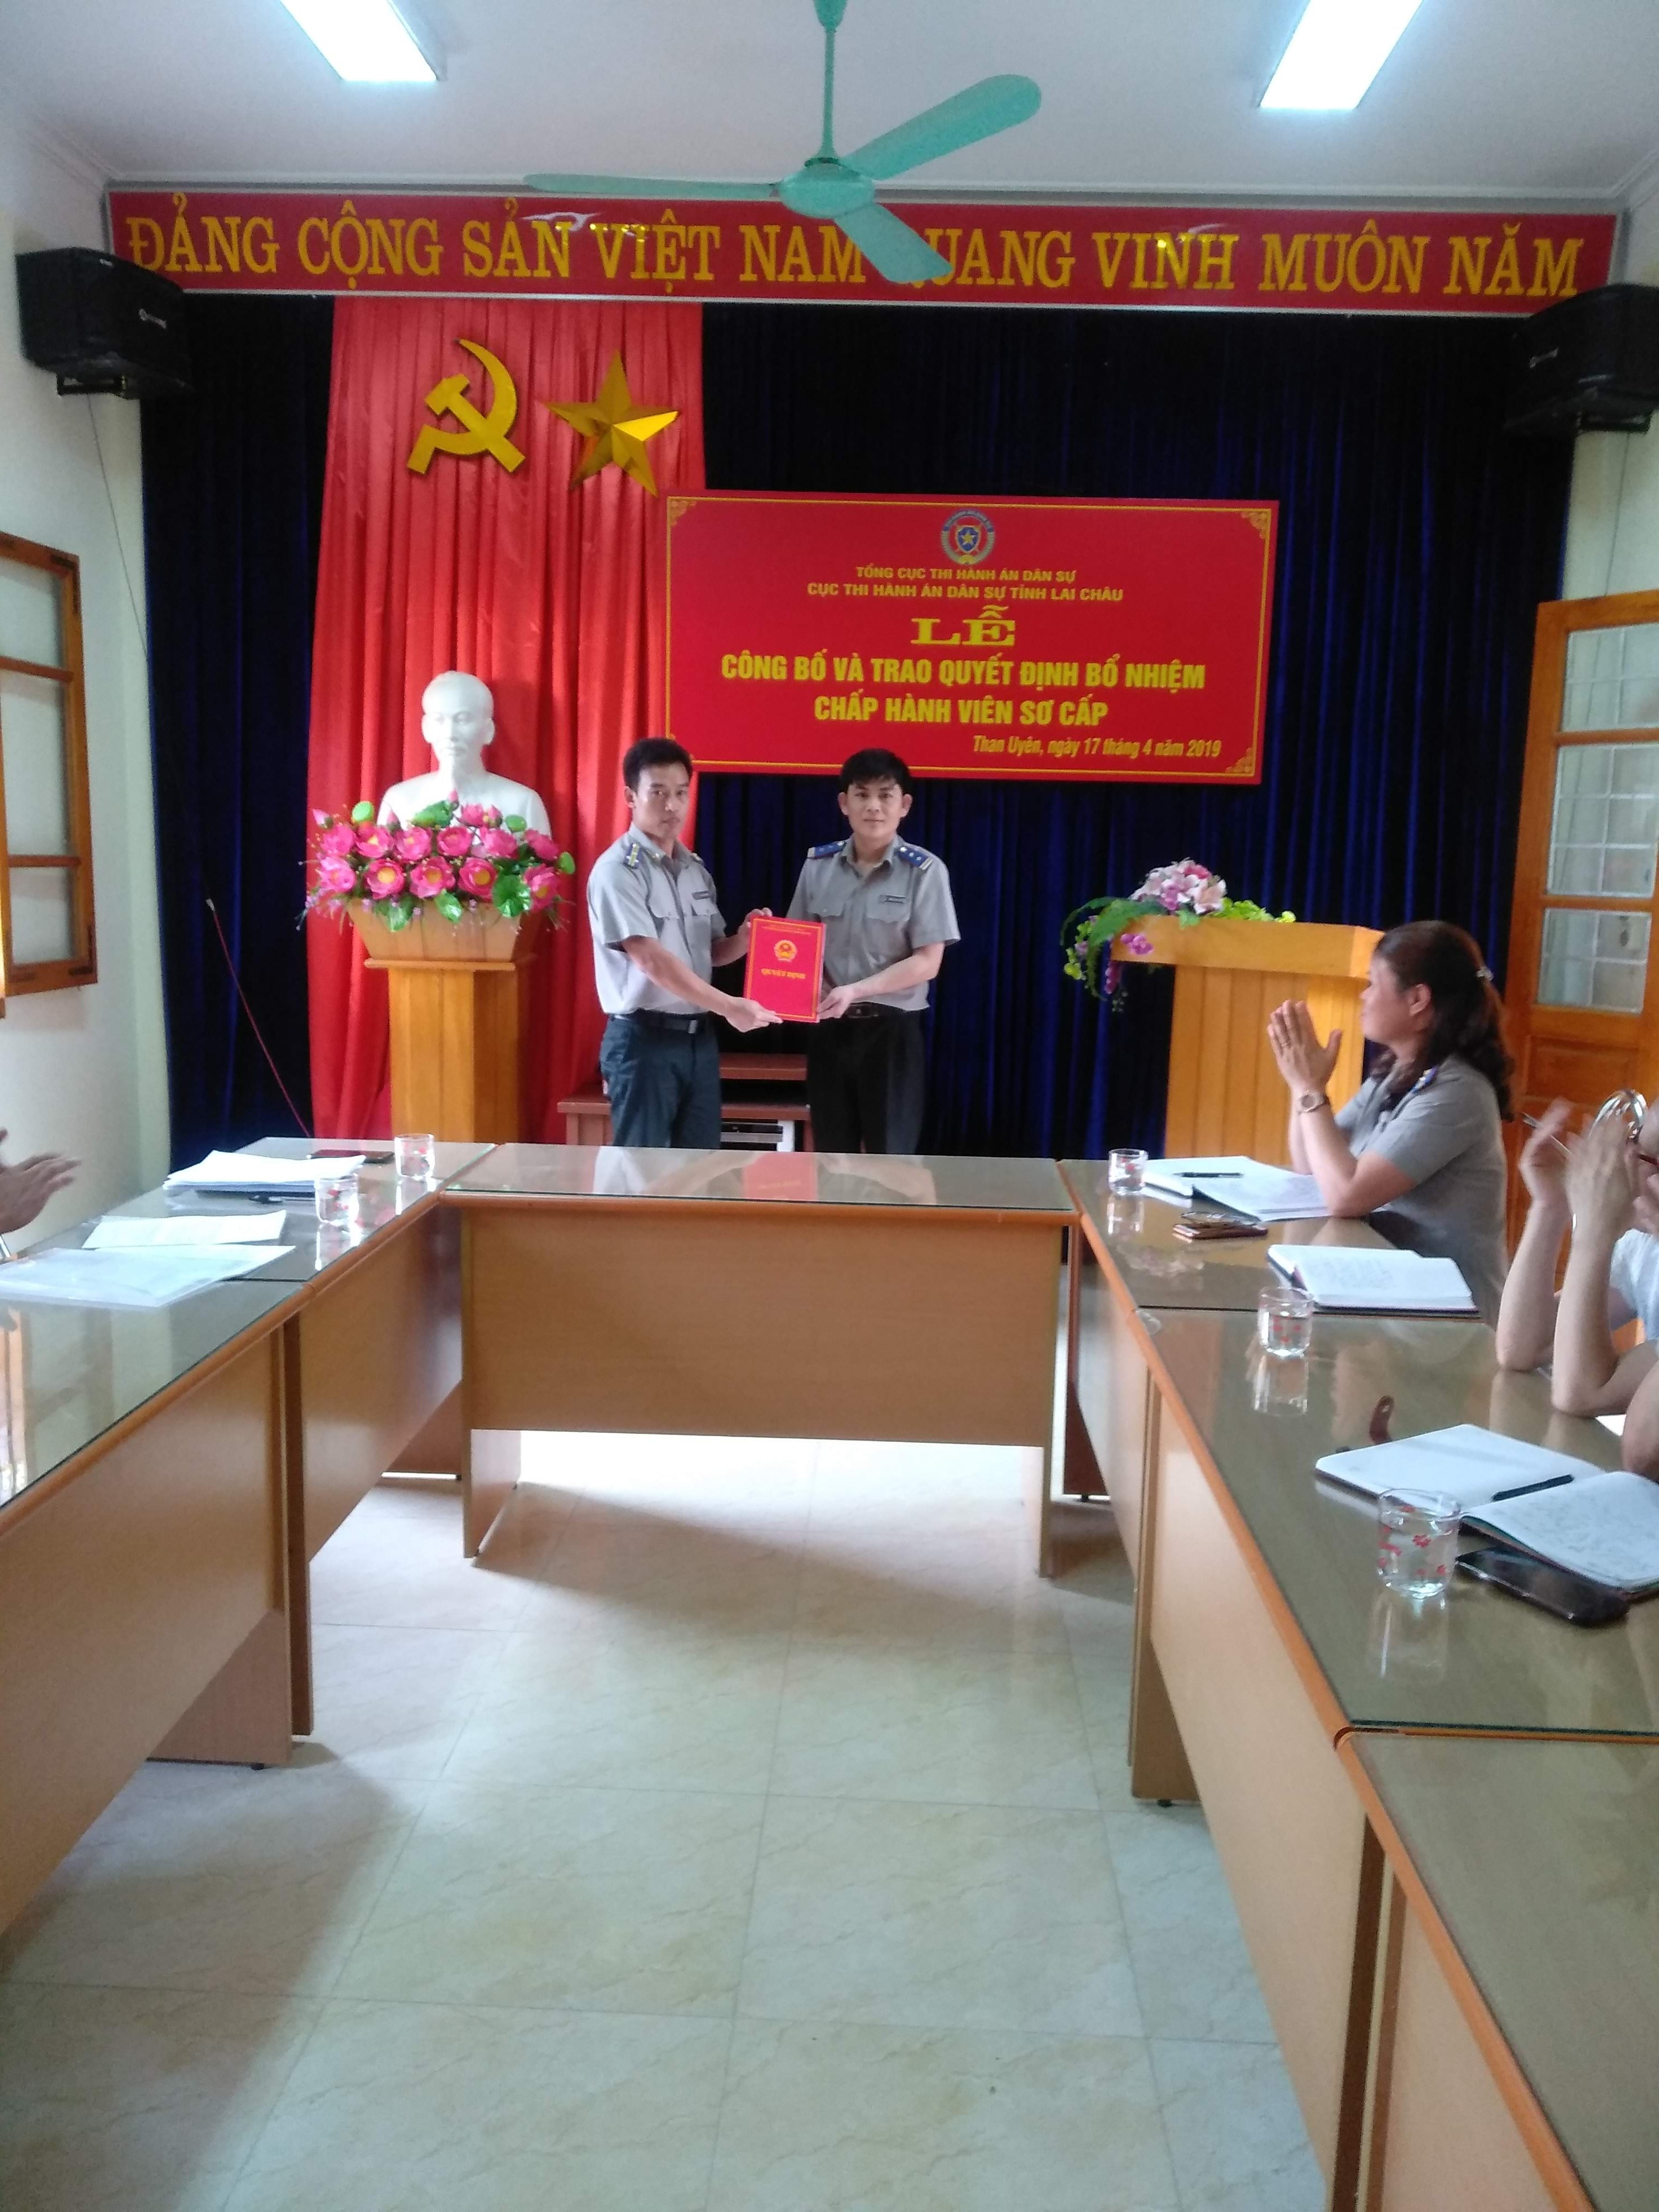 Cục Thi hành án dân sự tỉnh Lai Châu tổ chức Lễ công bố và trao Quyết định bổ nhiệm Chấp hành viên sơ cấp